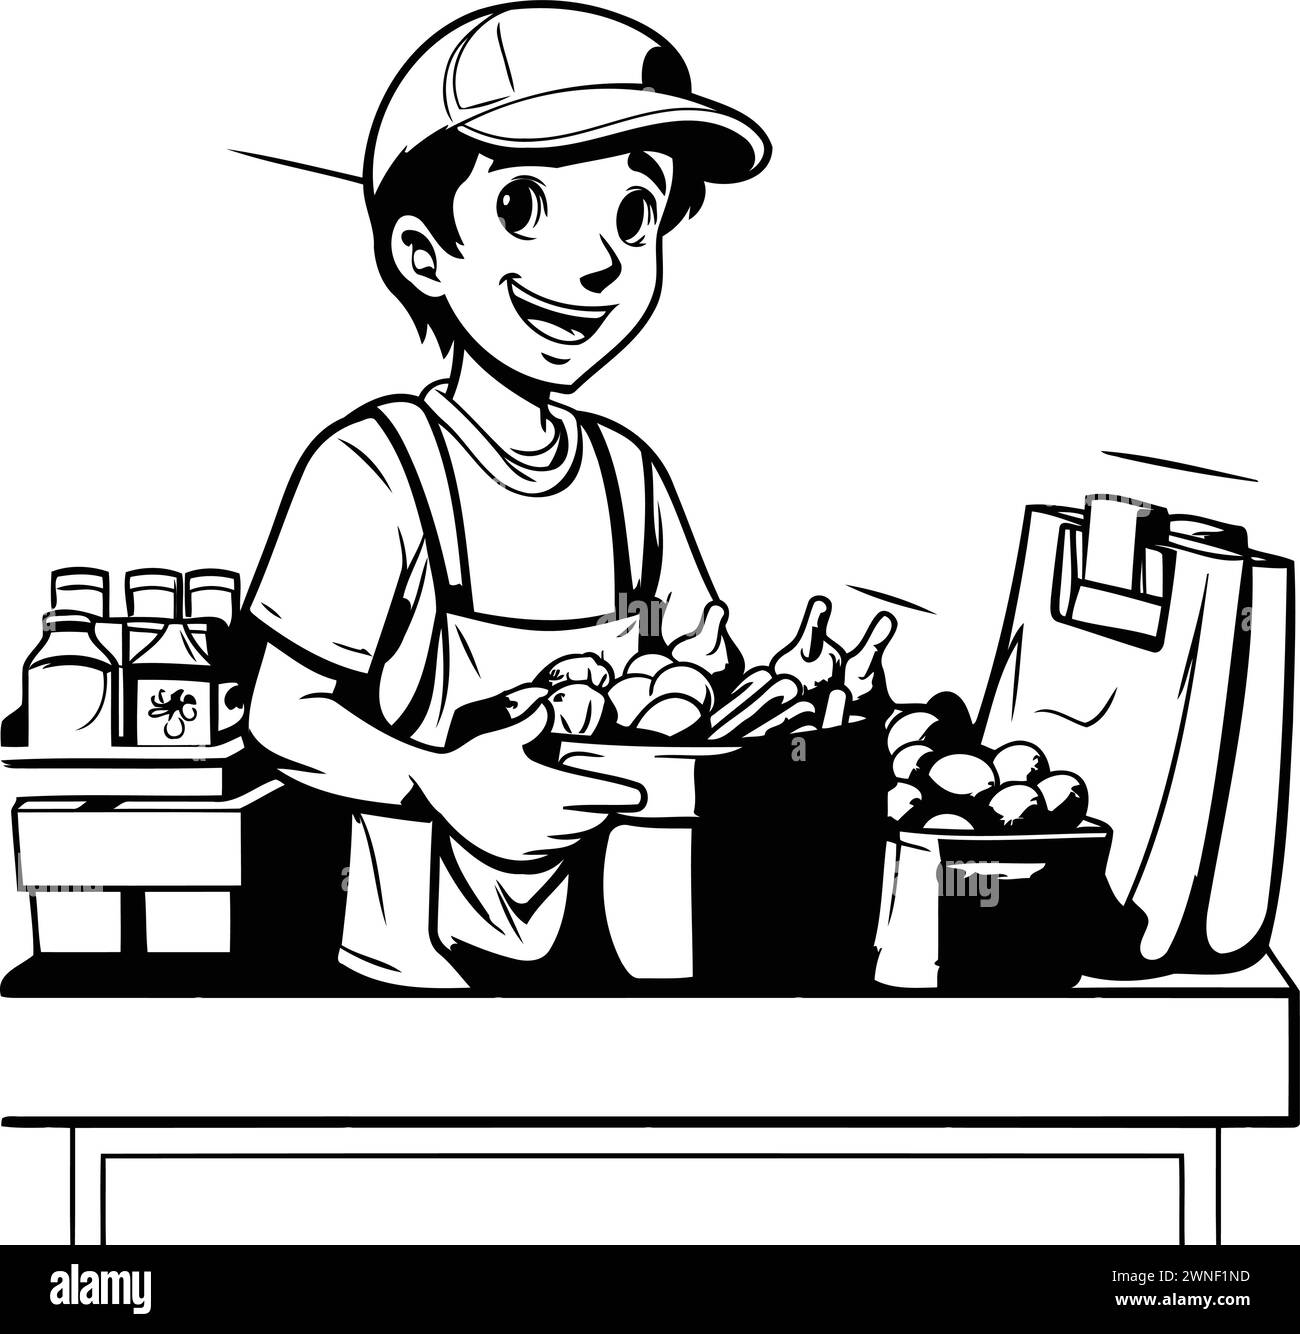 Illustration vectorielle d'un jeune homme vendant des fruits et légumes frais dans le supermarché Illustration de Vecteur